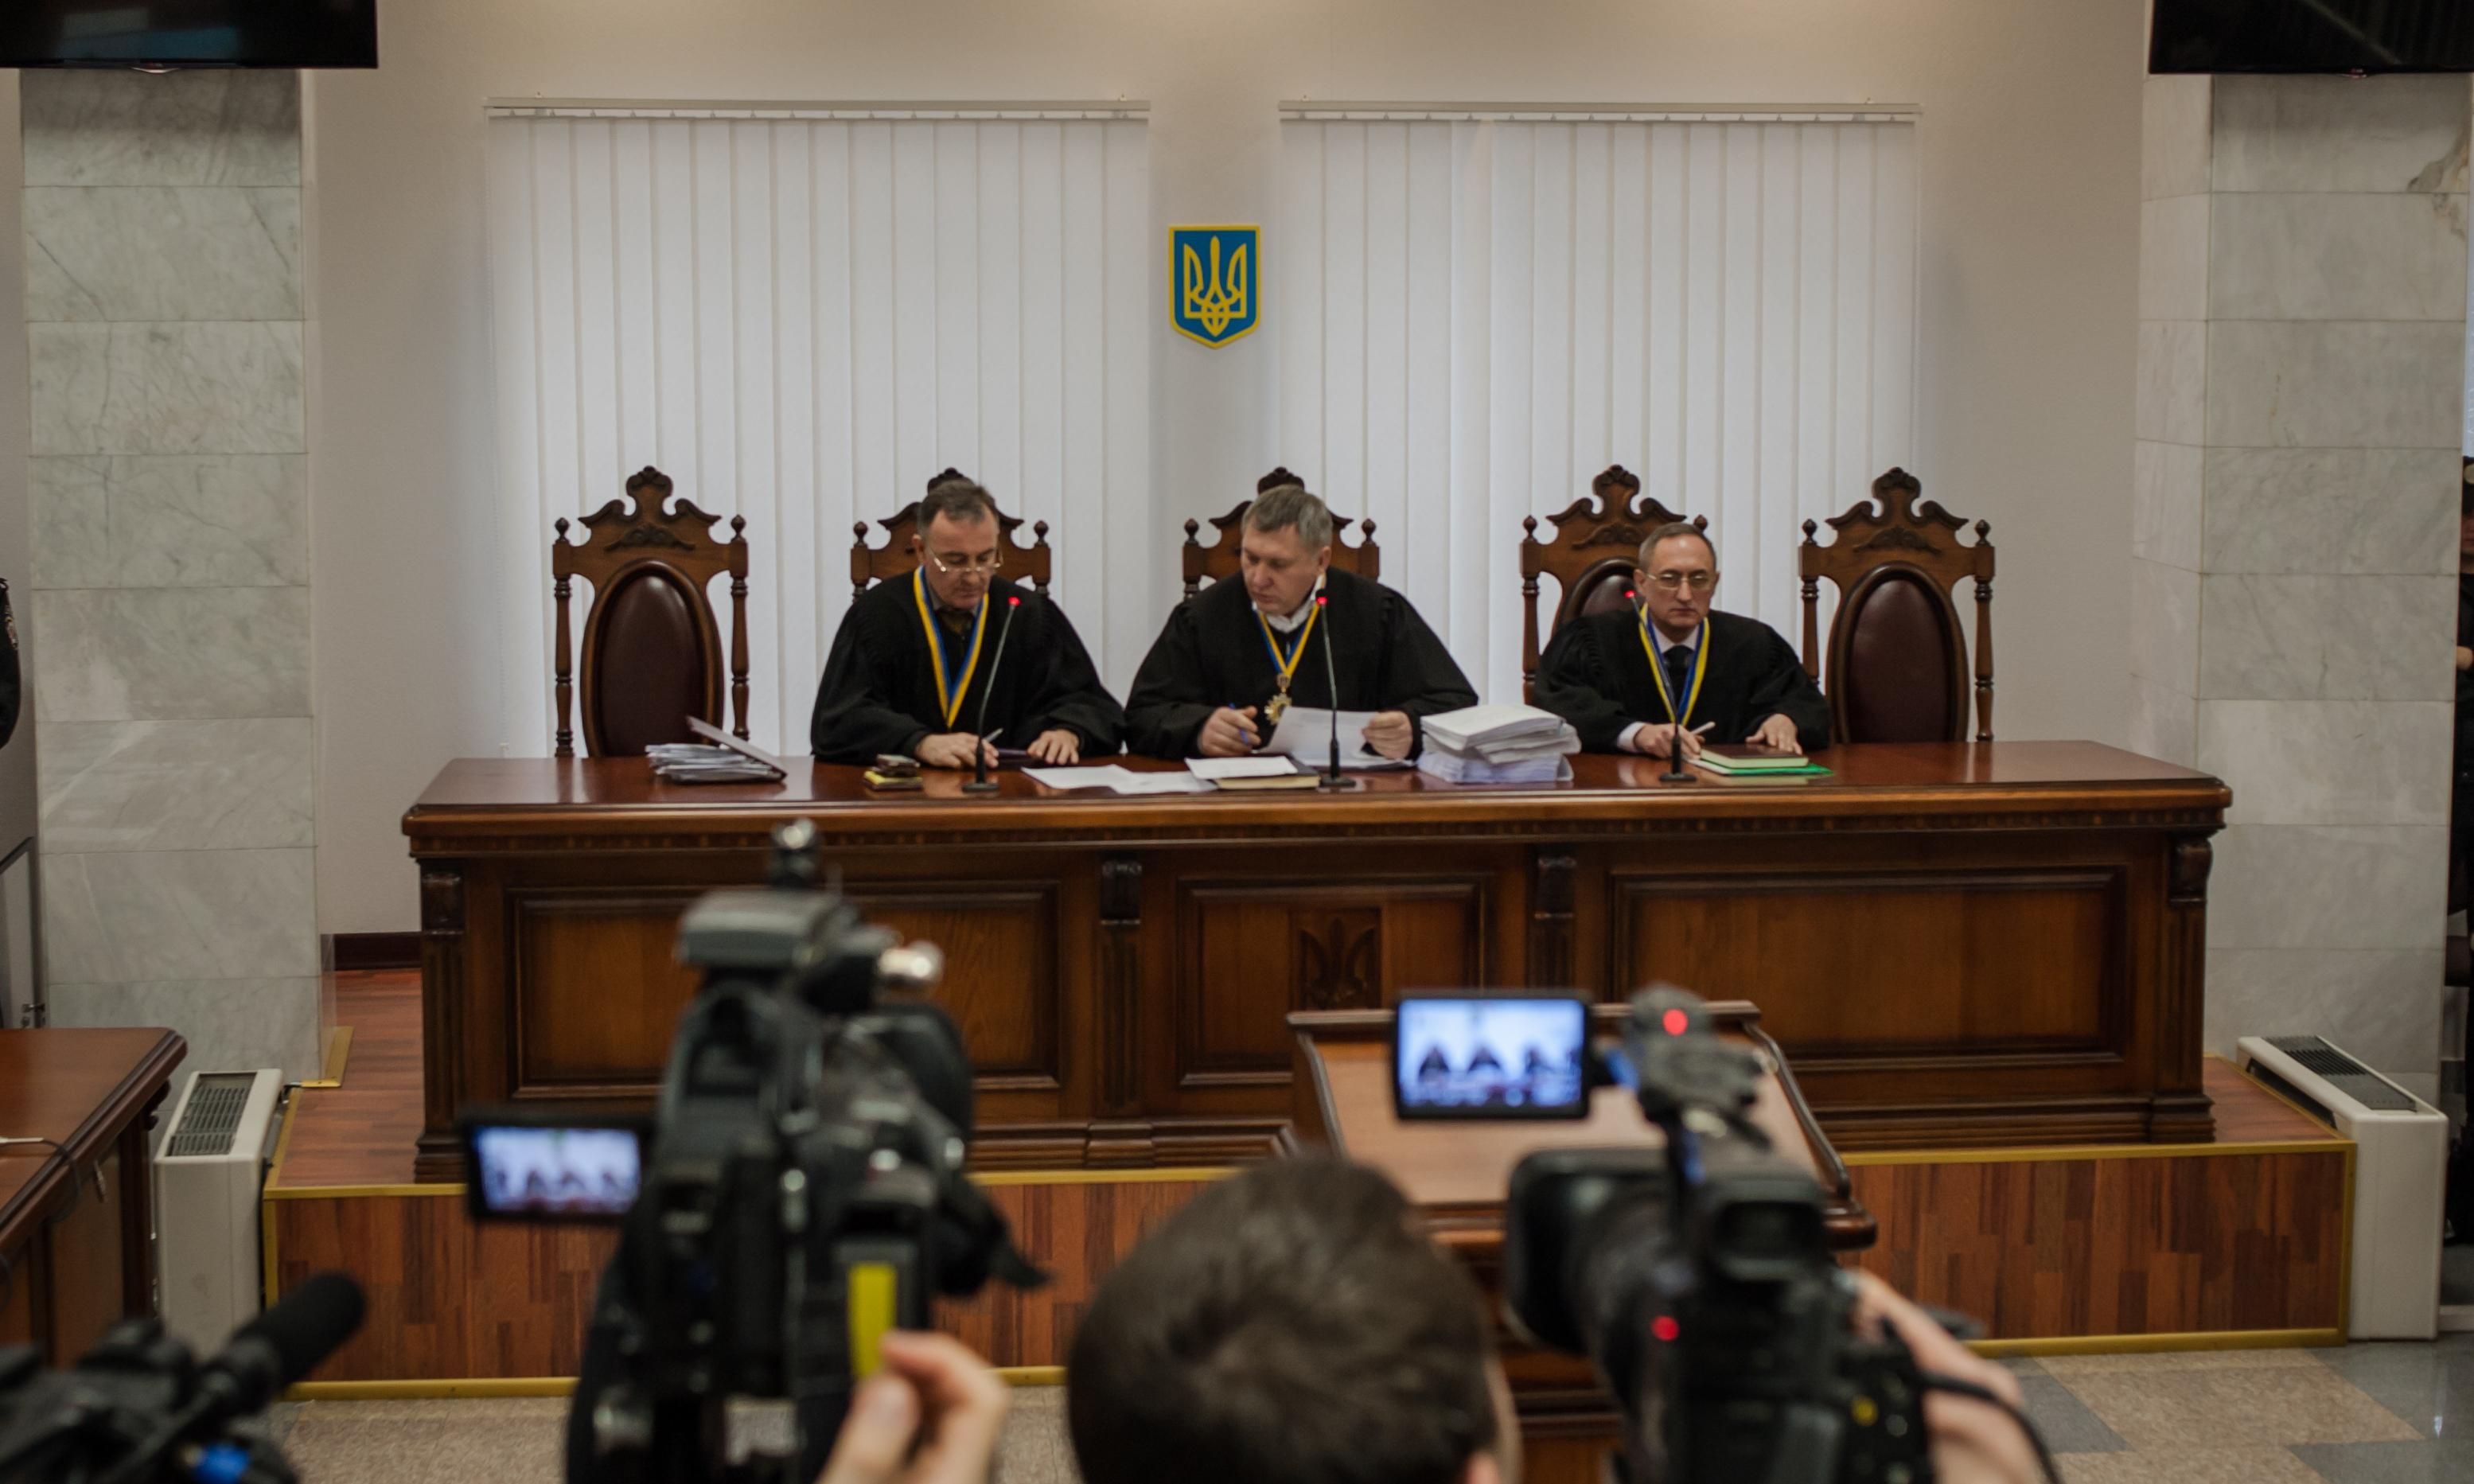 Без стен и перегородок: как планируют осовременить украинские суды